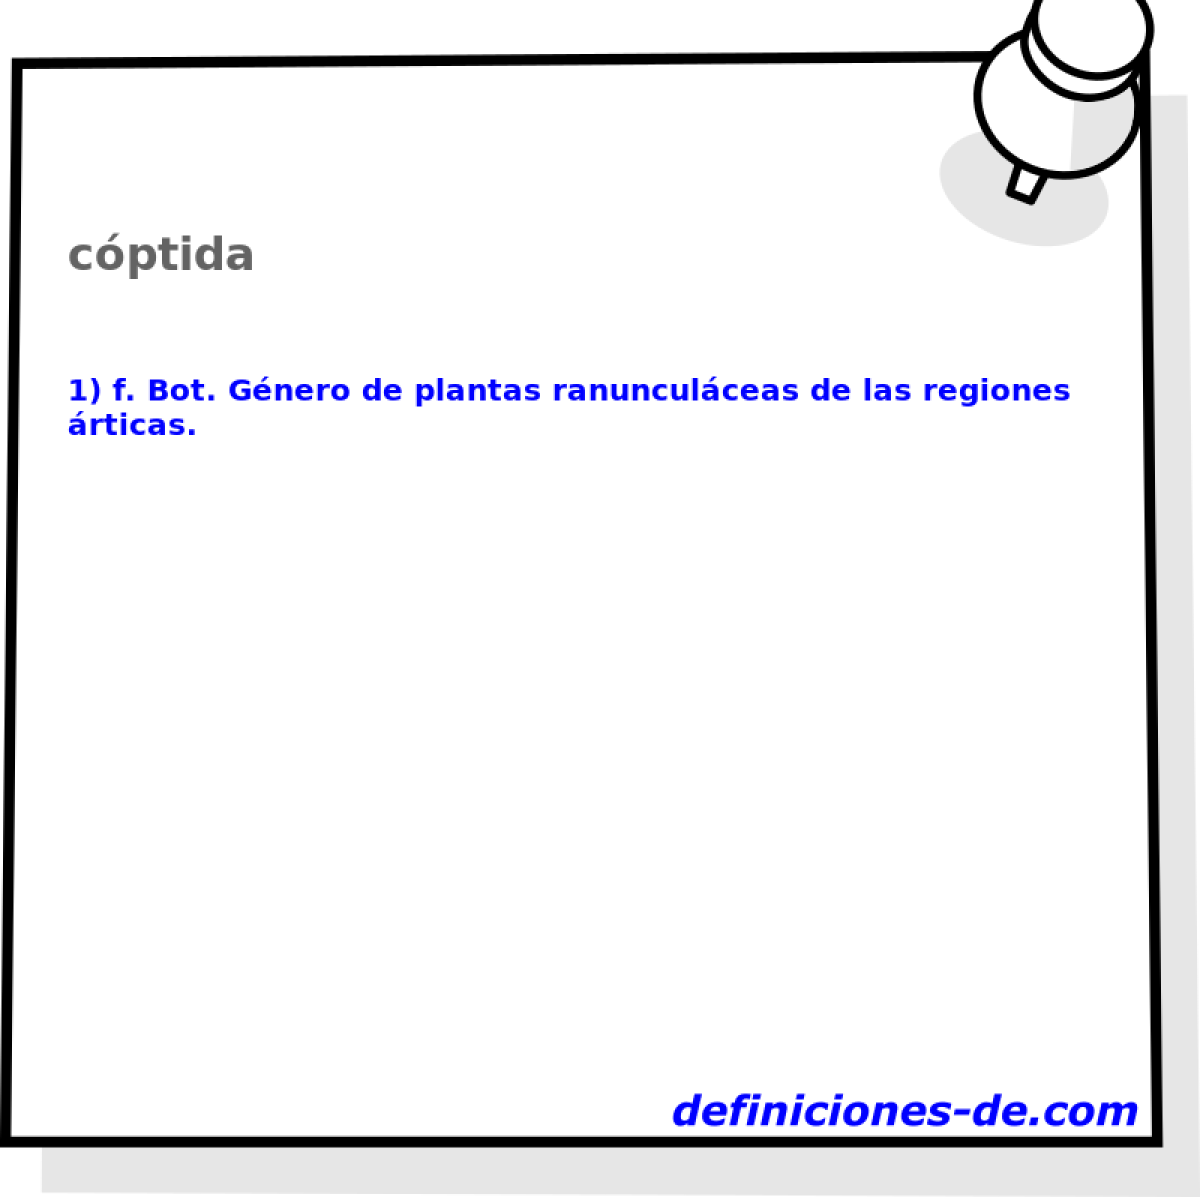 cptida 